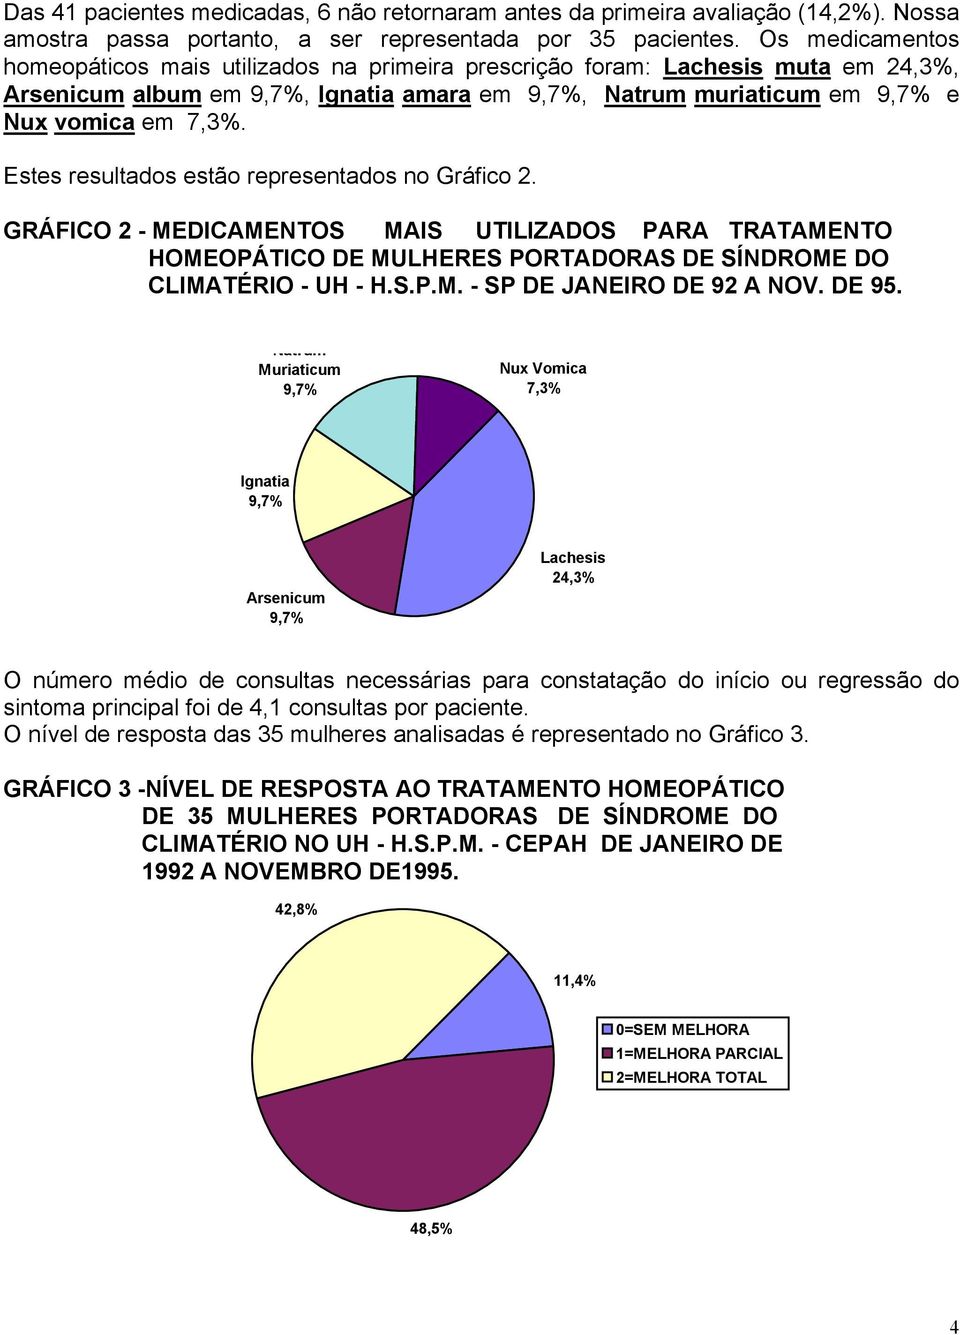 Estes resultados estão representados no Gráfico 2. GRÁFICO 2 - MEDICAMENTOS MAIS UTILIZADOS PARA TRATAMENTO HOMEOPÁTICO DE MULHERES PORTADORAS DE SÍNDROME DO CLIMATÉRIO - UH - H.S.P.M. - SP DE JANEIRO DE 92 A NOV.